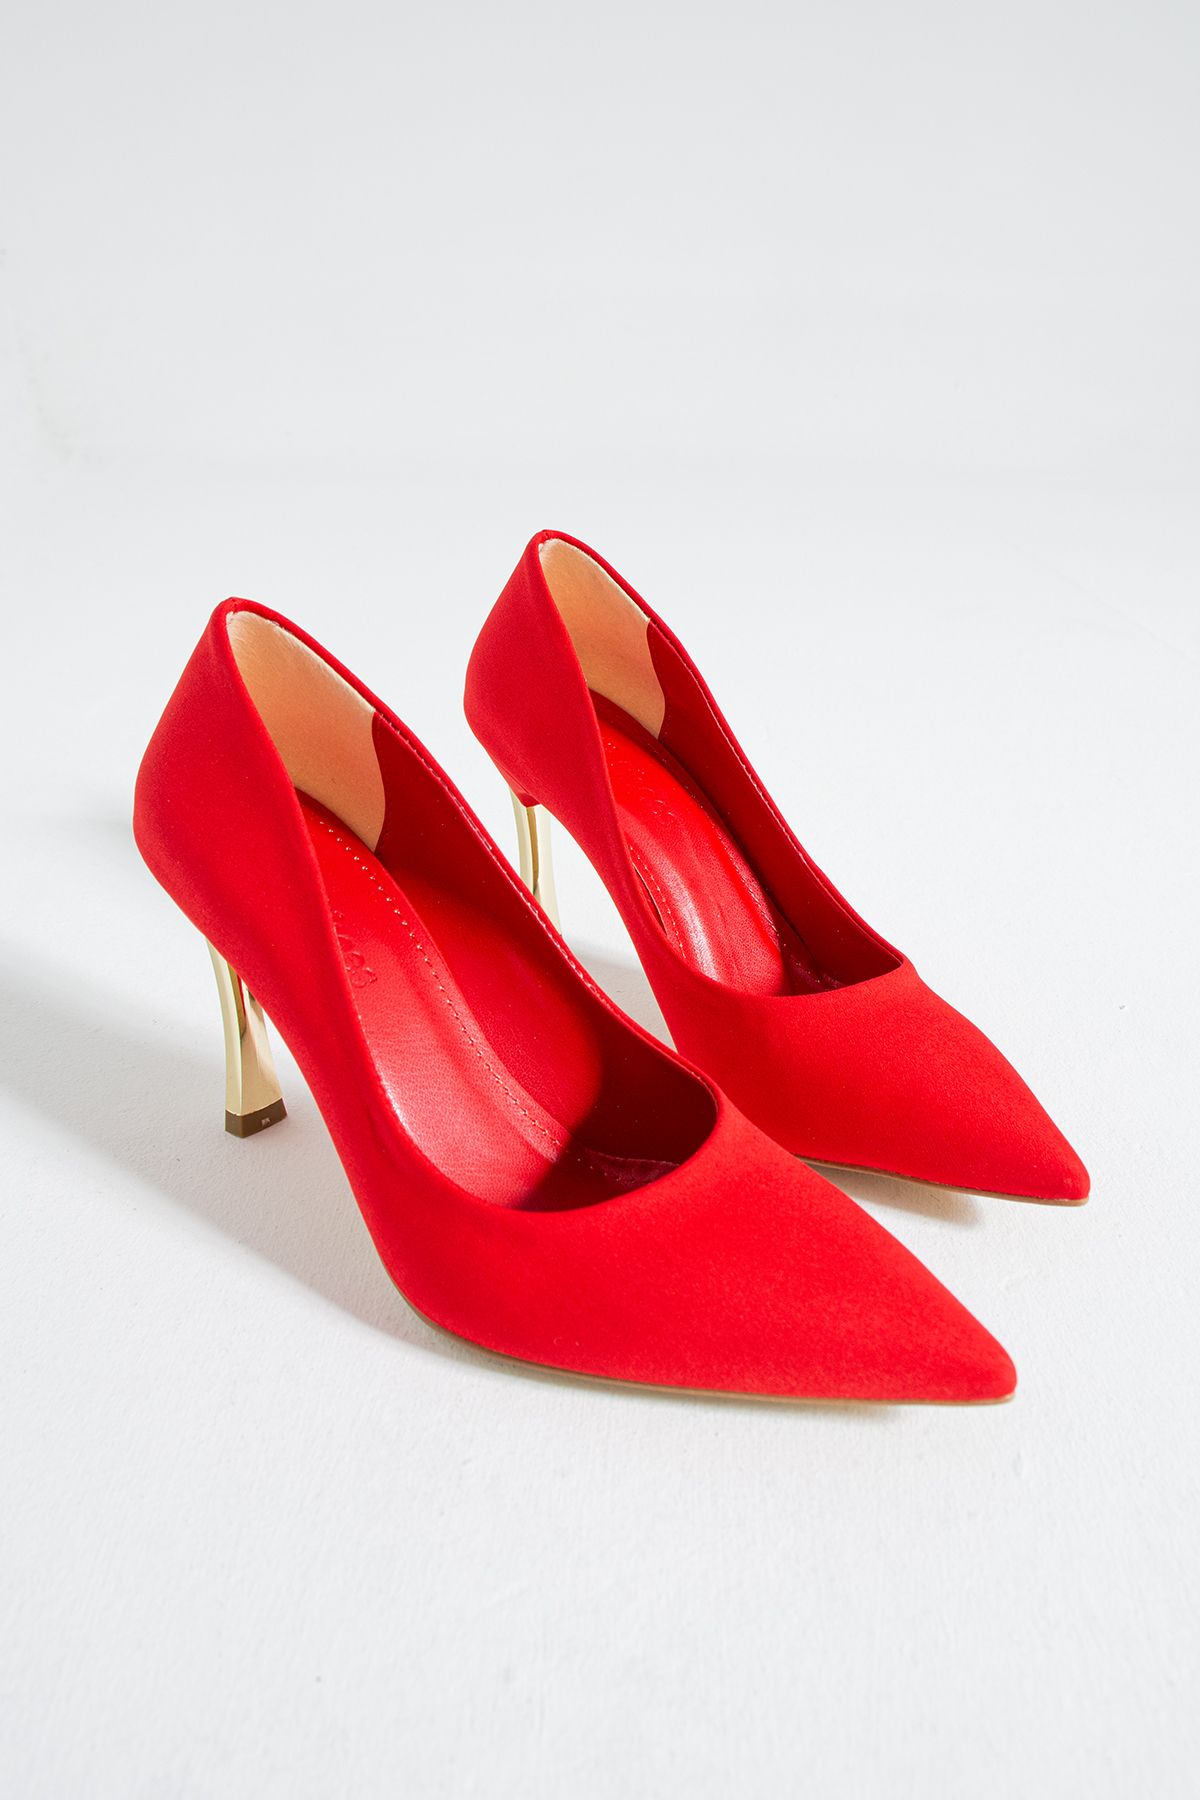 Güllü Shoes Kadın Topuklu Ayakkabı - Yüksek Topuklu Stiletto Rahat Şık Ve Ince Iş Ayakkabısı Kırmızı Renk 9 Cm